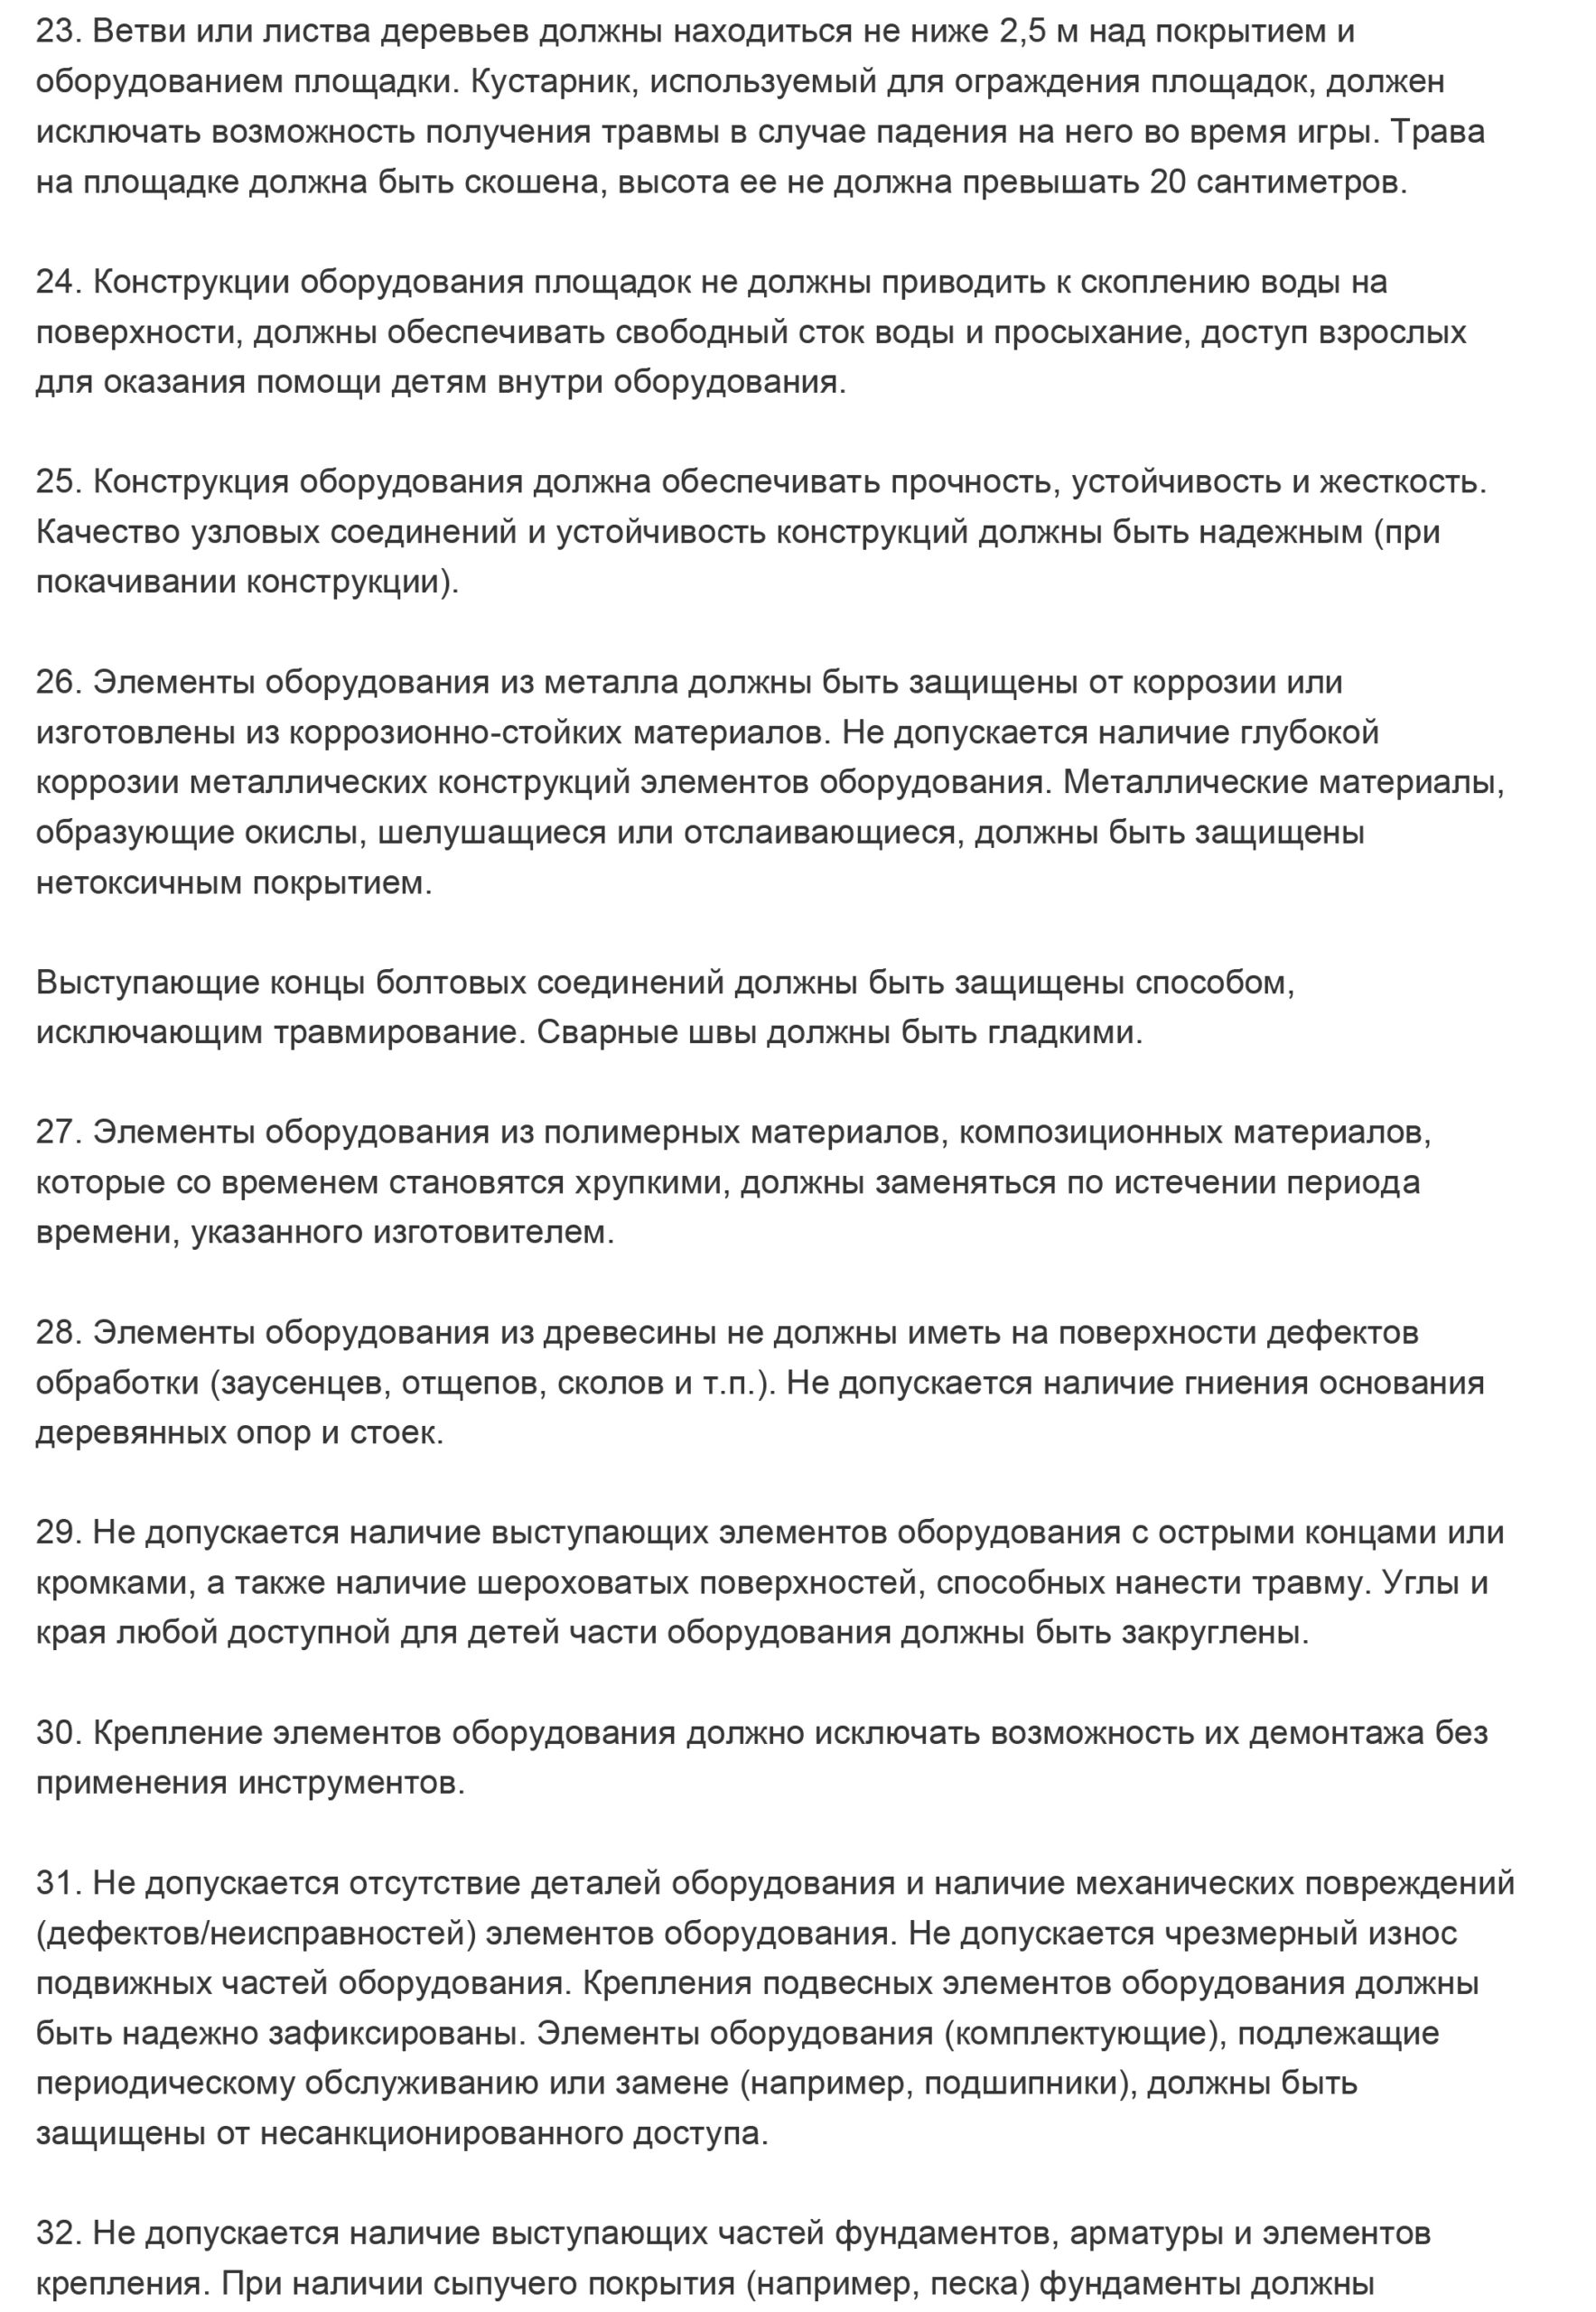 Основные требования к детским и спортивным площадкам в Московской .